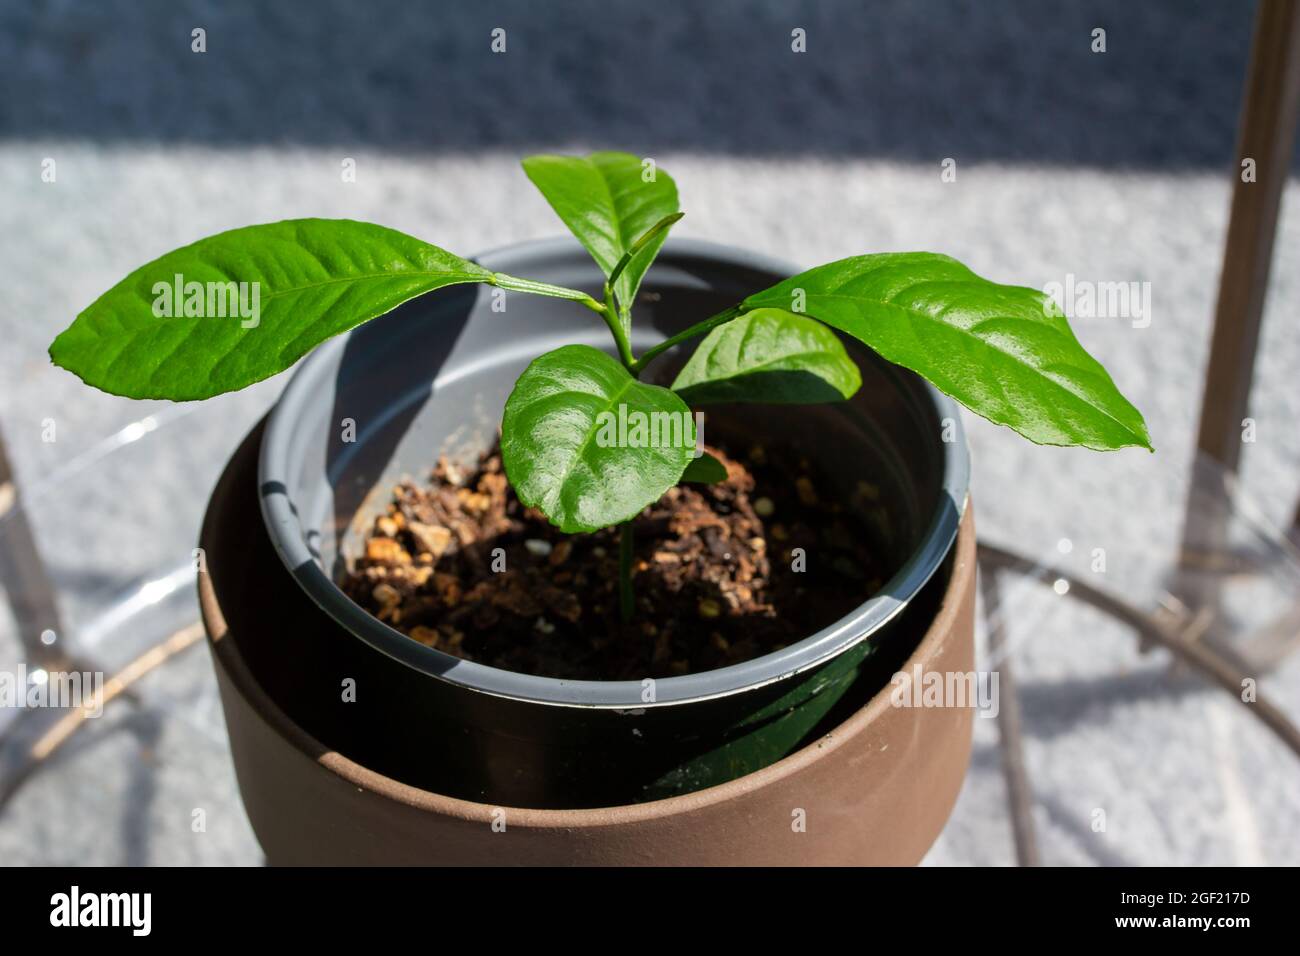 Planta de limonero en macetas, creciendo a partir de una semilla, con luz  natural Fotografía de stock - Alamy